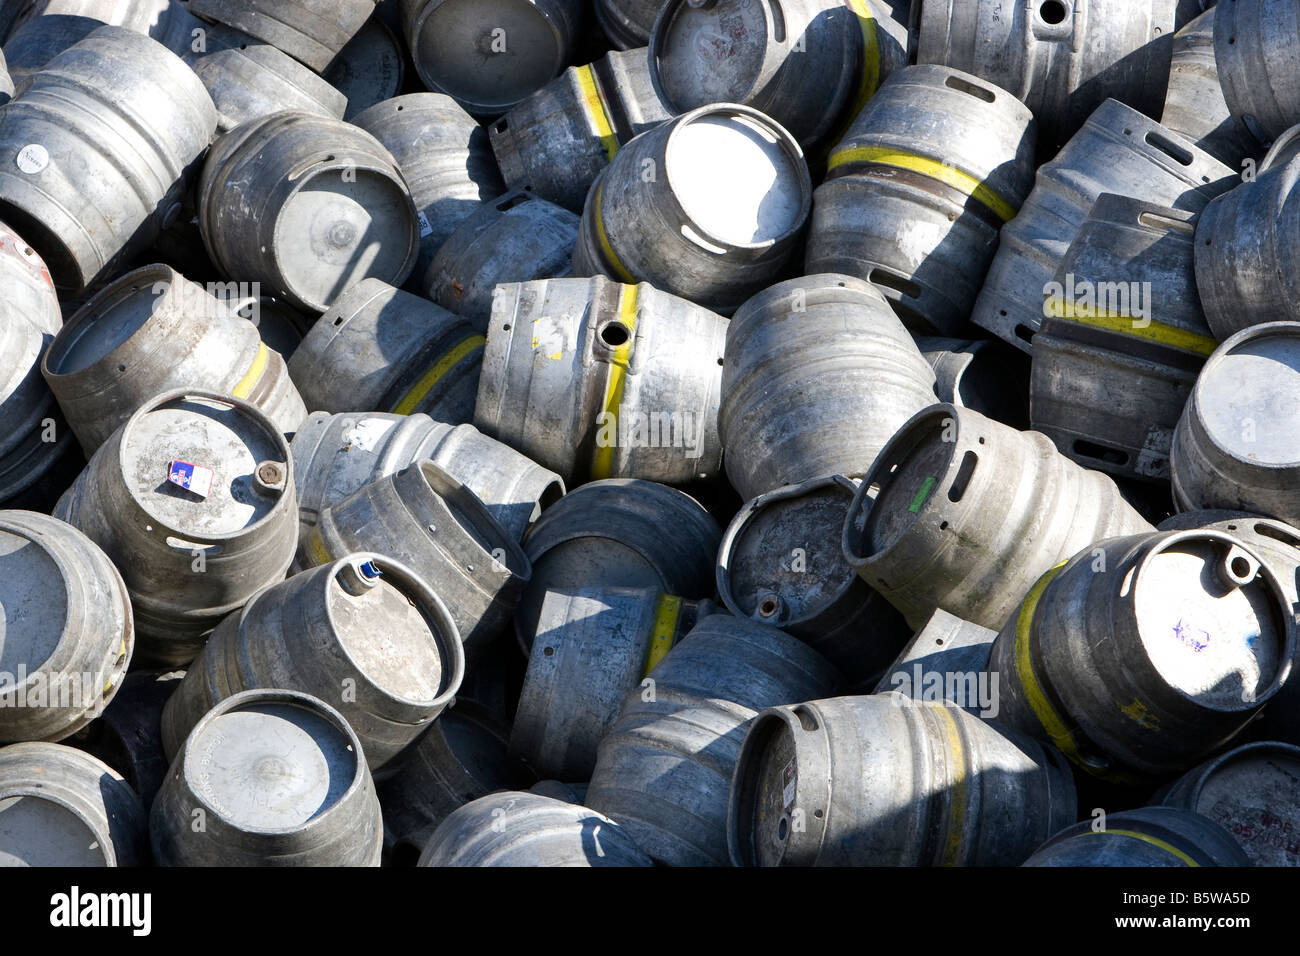 Barils de bière vides dans un centre de recyclage de déchets d'acier inoxydable à Sheffield Banque D'Images